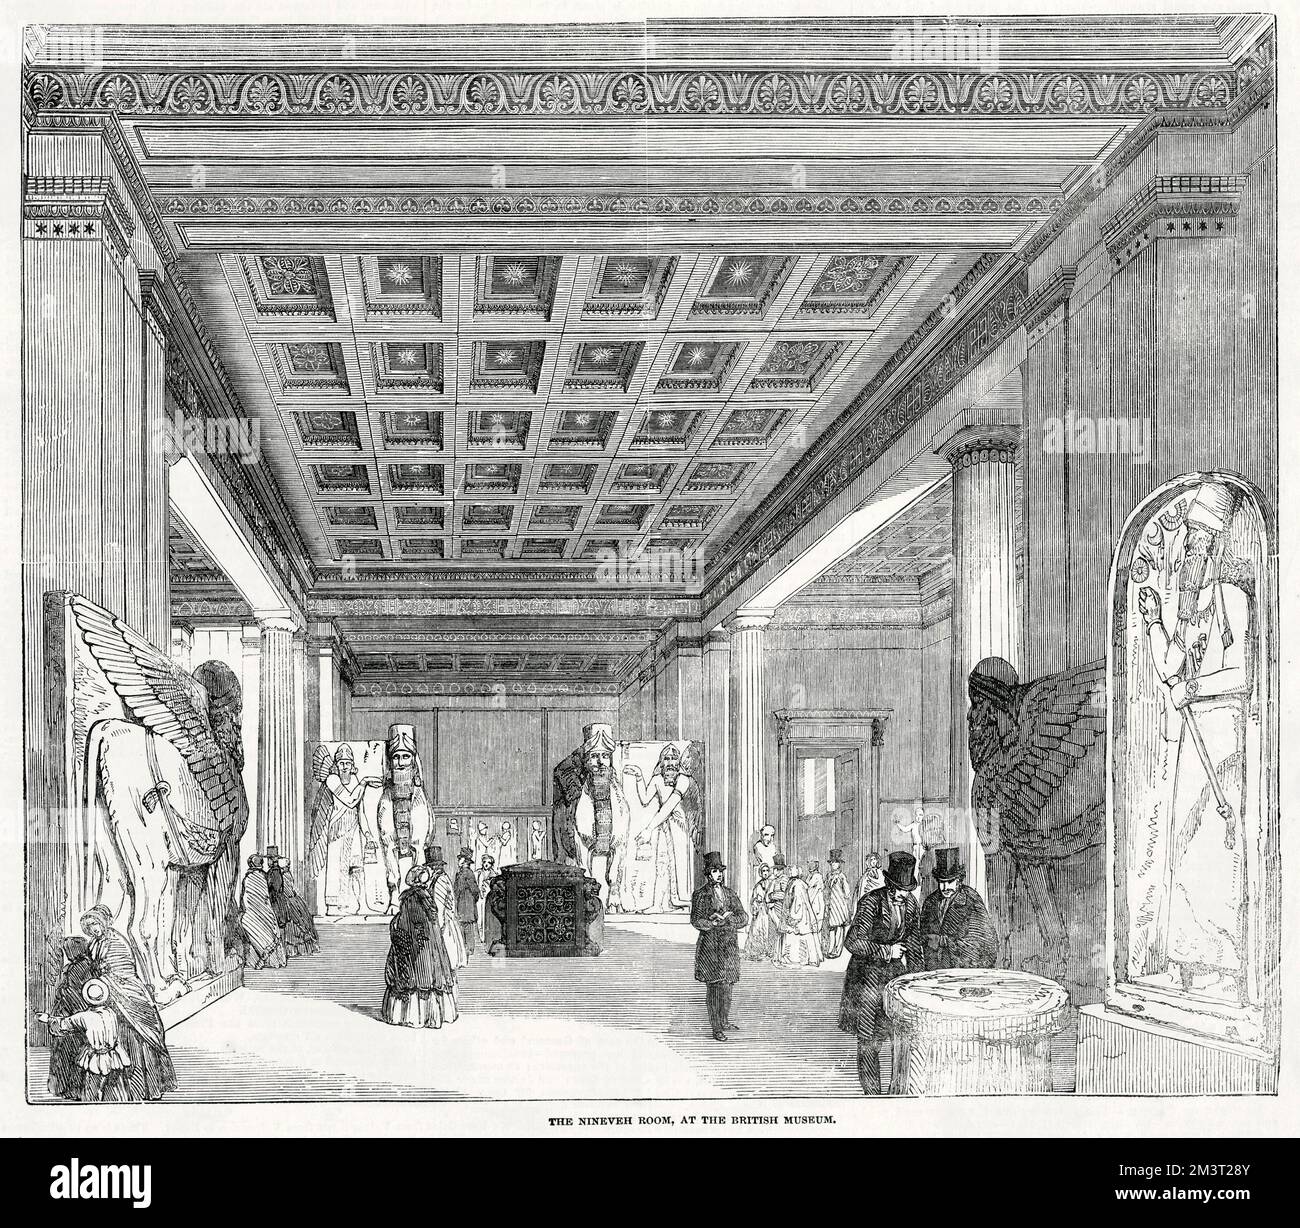 La salle Ninive au British Museum. Date: 1853 Banque D'Images